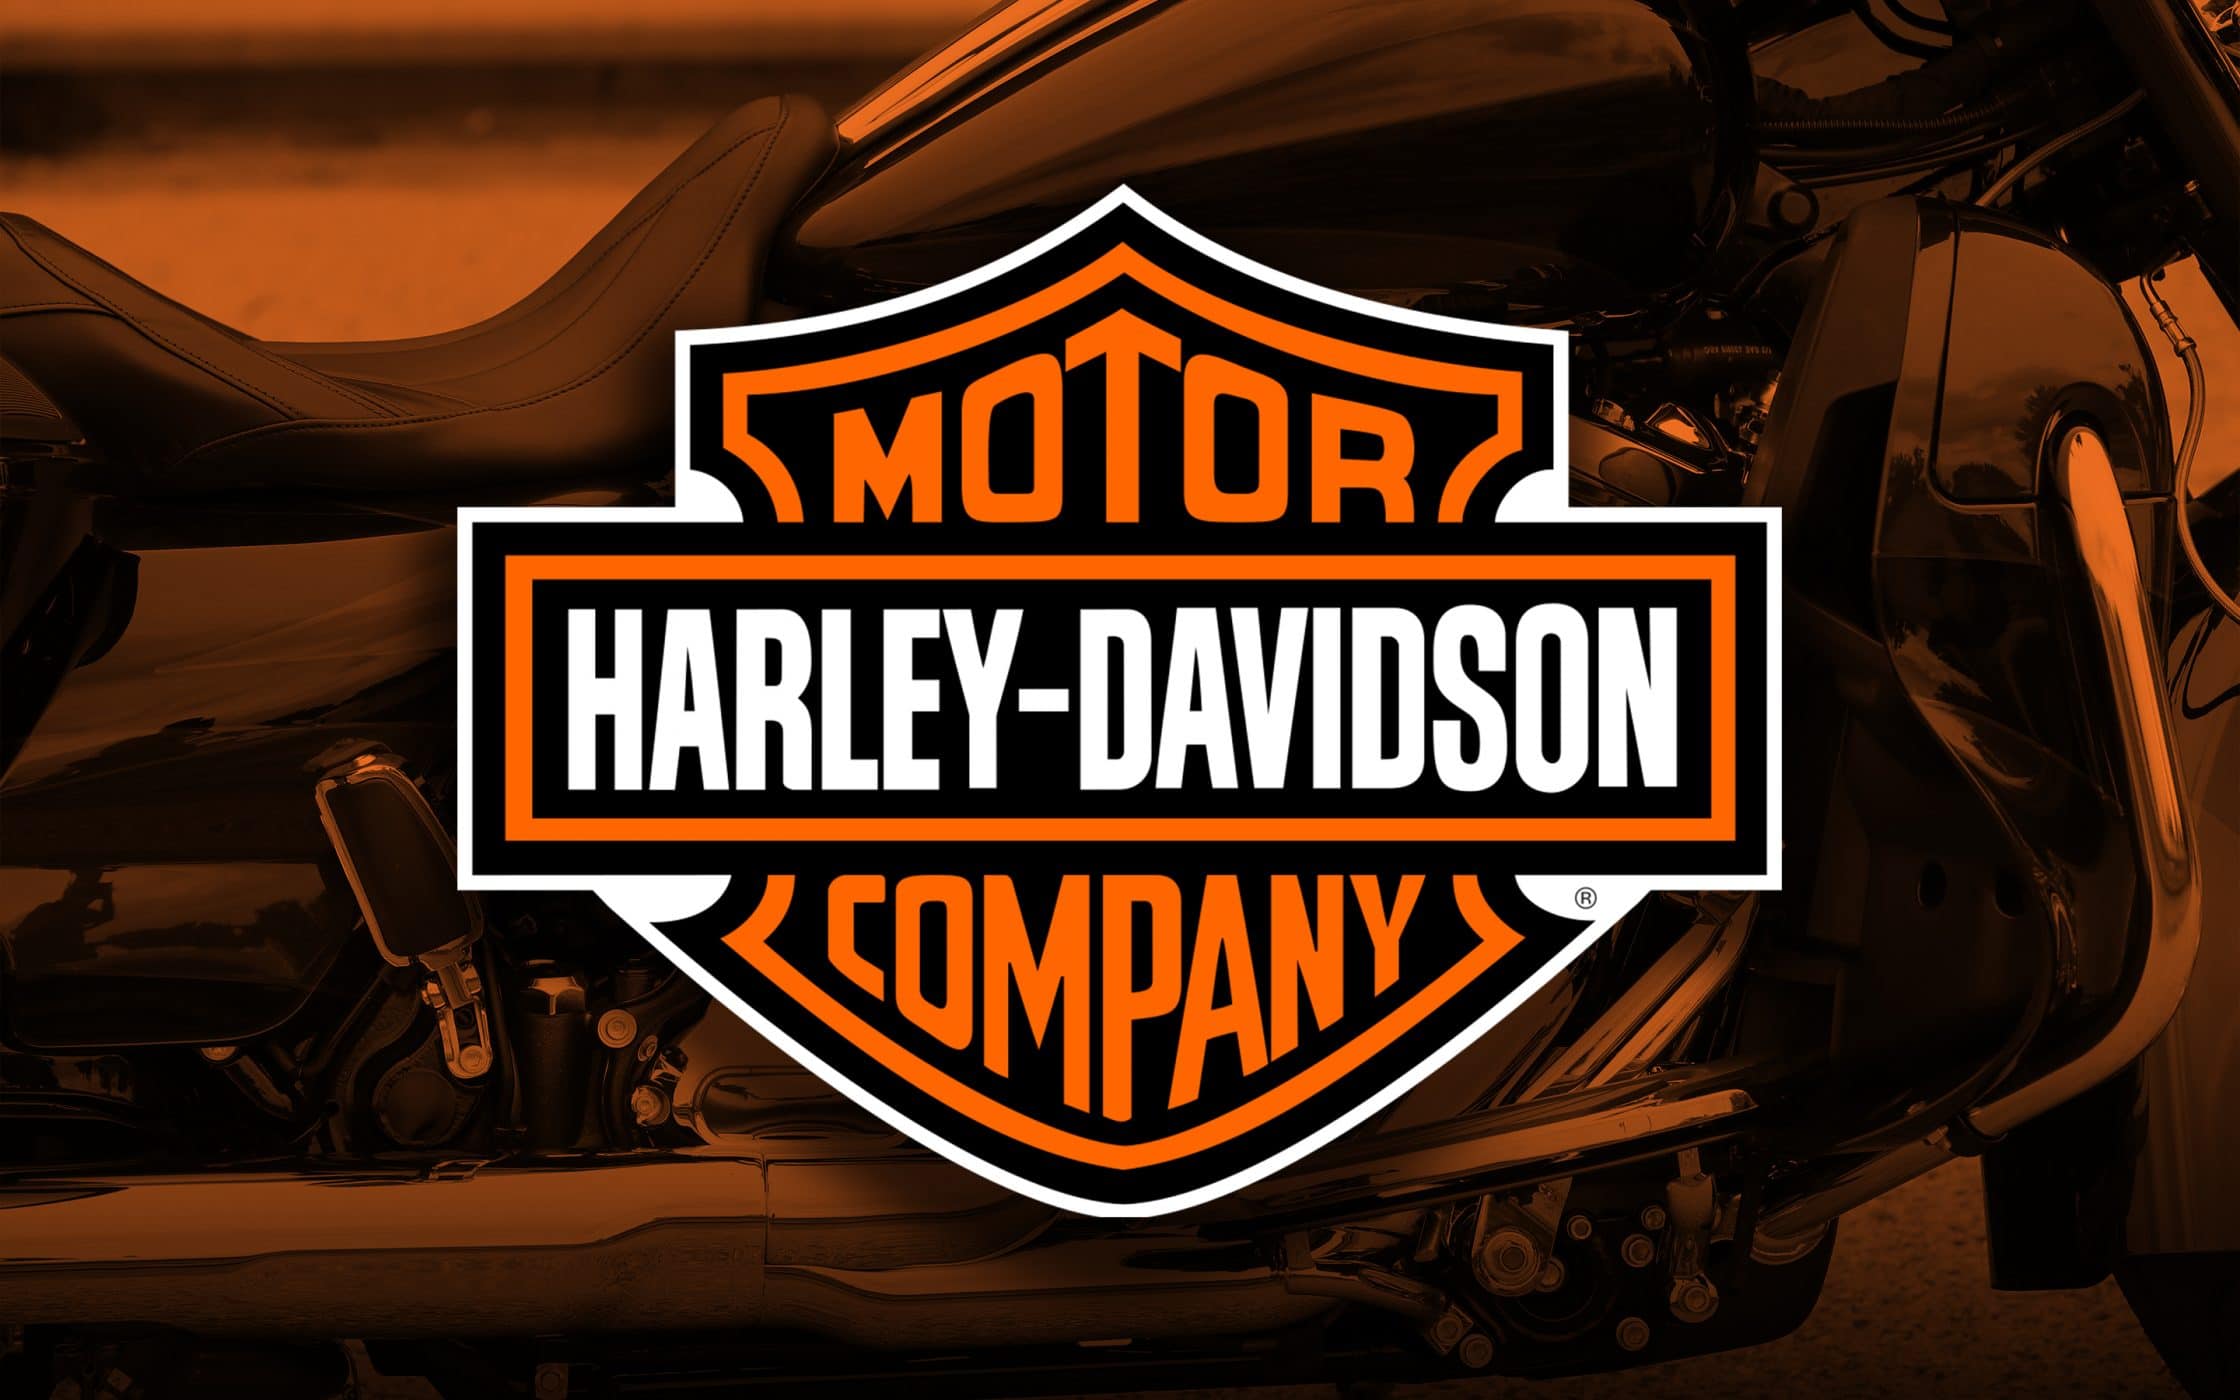 447243 Обои и Логотип Harley Davidson картинки на рабочий стол. Скачать  заставки на ПК бесплатно